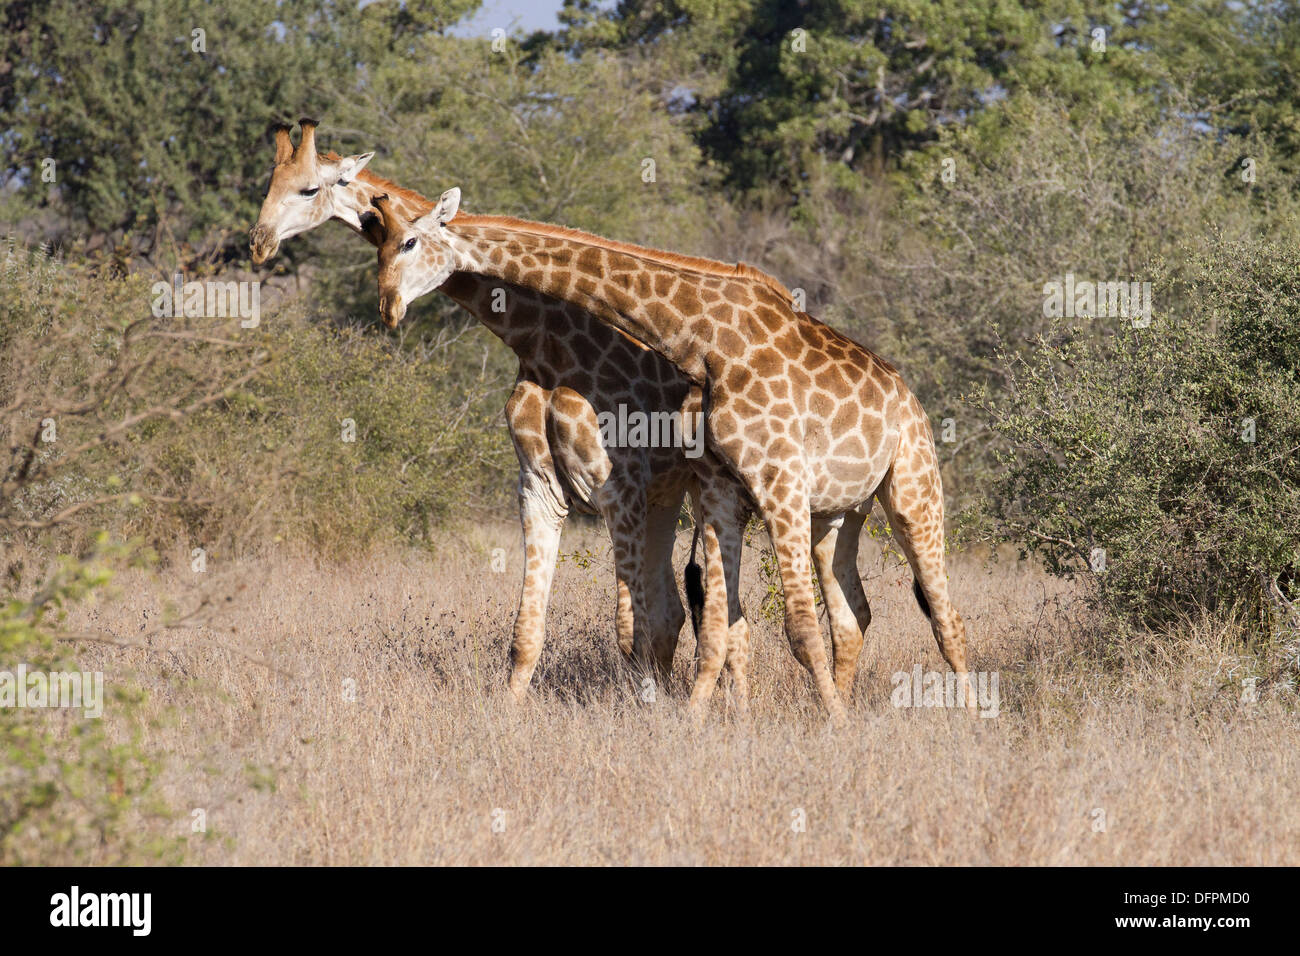 Girafe dans le bushveld, Kruger National Park, Afrique du Sud. Banque D'Images